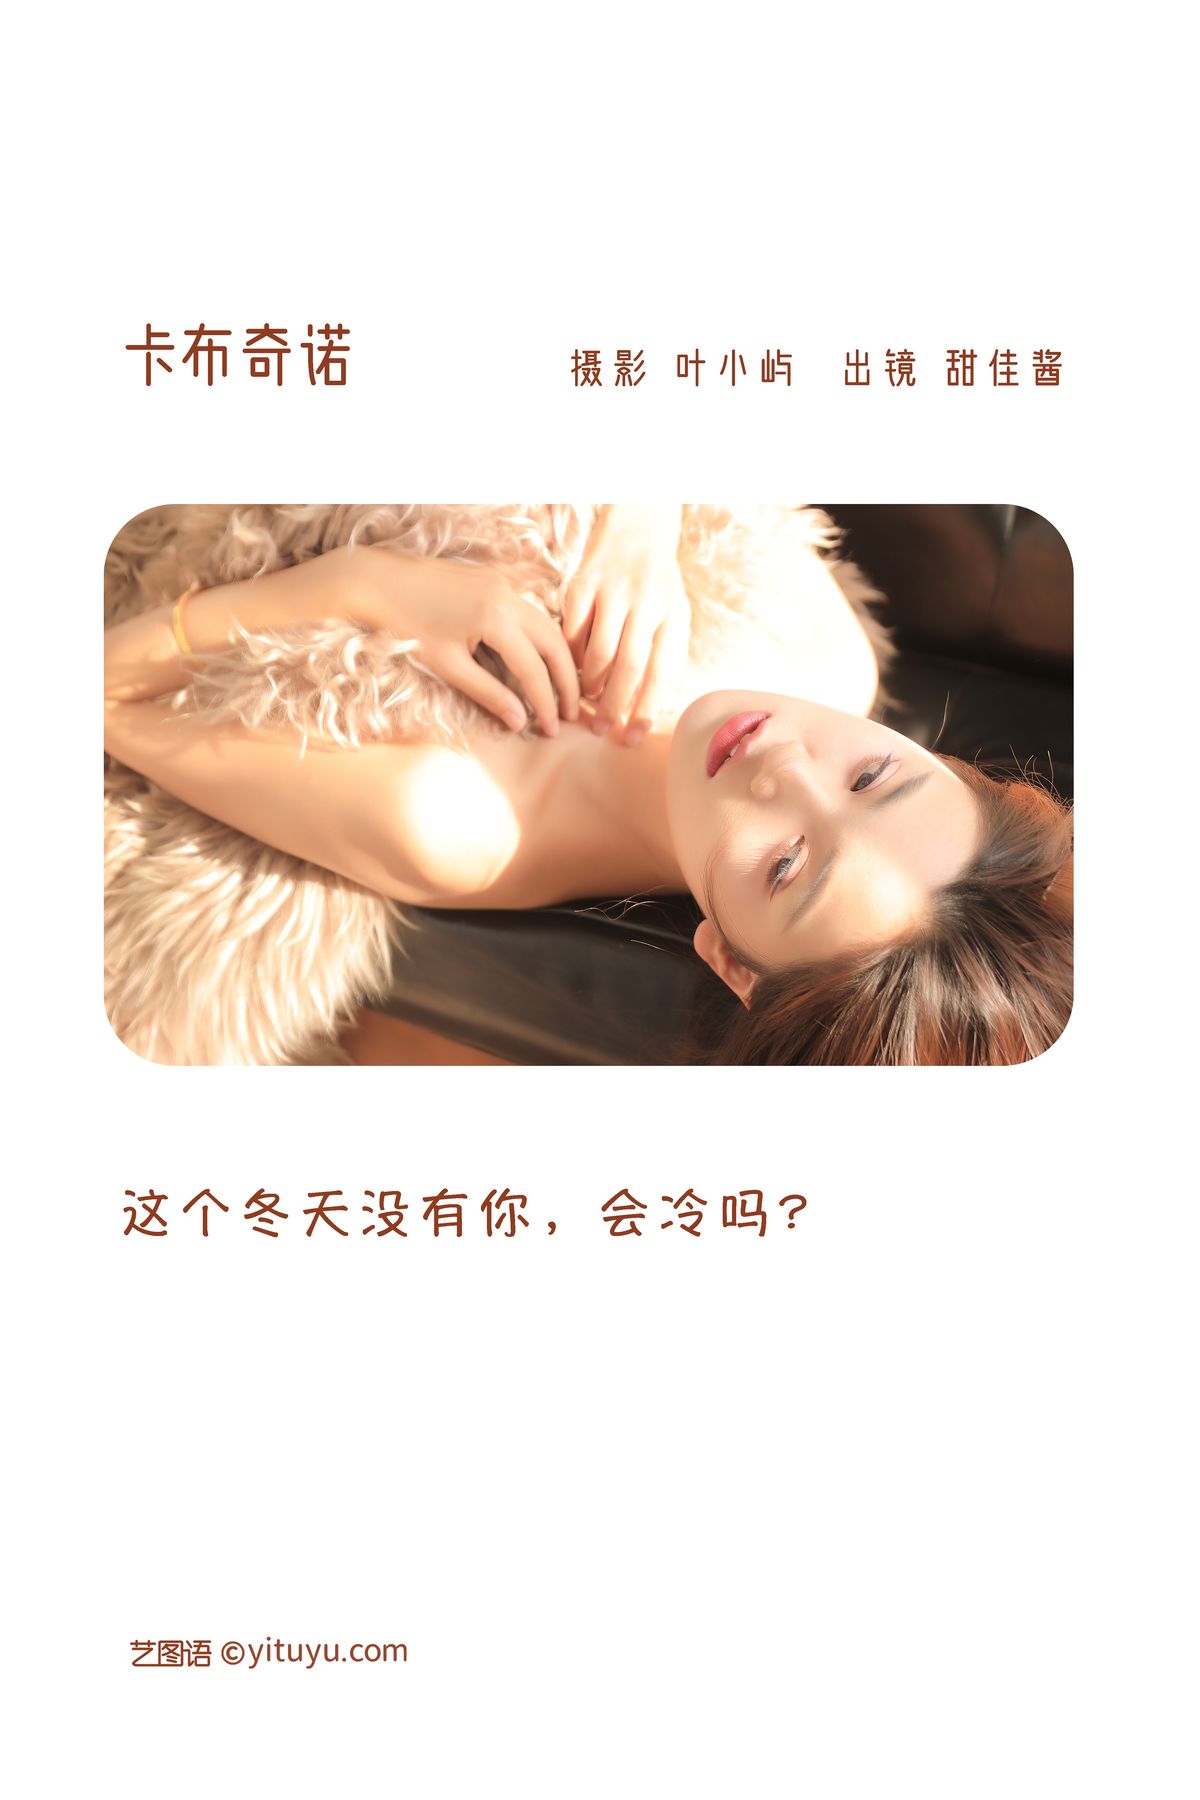 YiTuYu艺图语 Vol 3077 Tian Jia Jiang 0001 8309058449.jpg